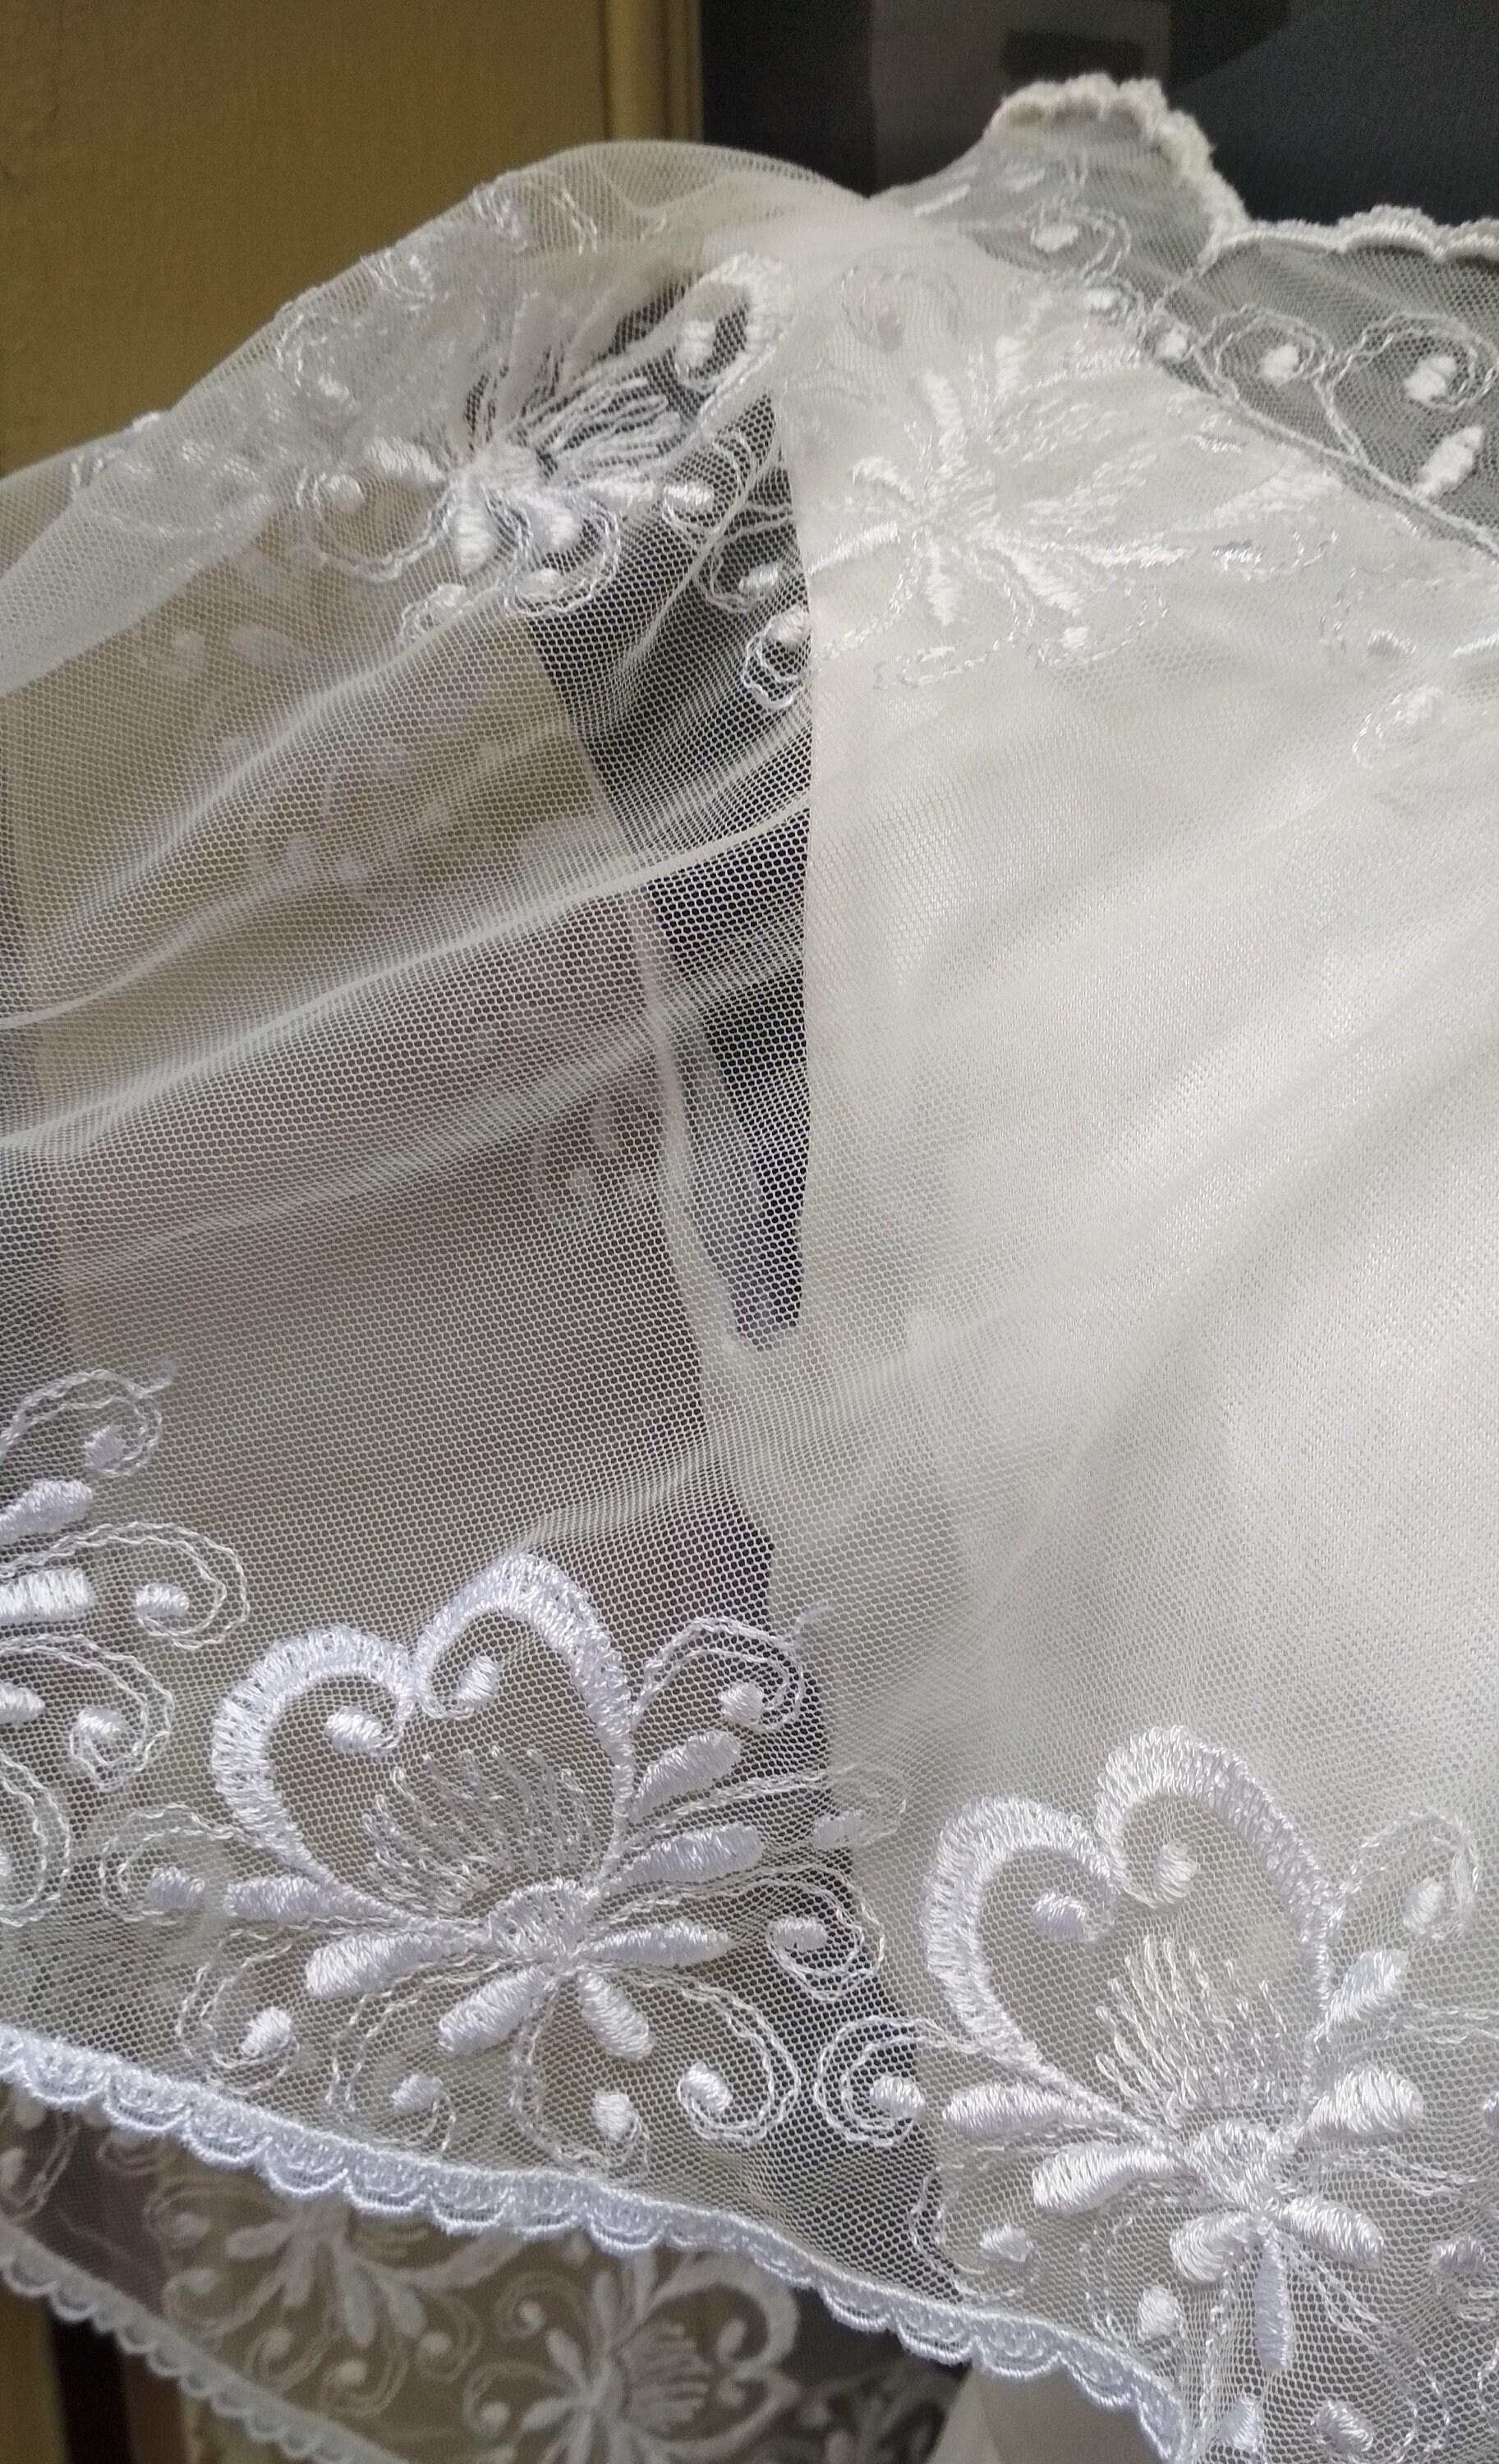 Vintage Wedding Dress 70s / Lace Tulle Romantic Boho Wedding - Etsy Canada